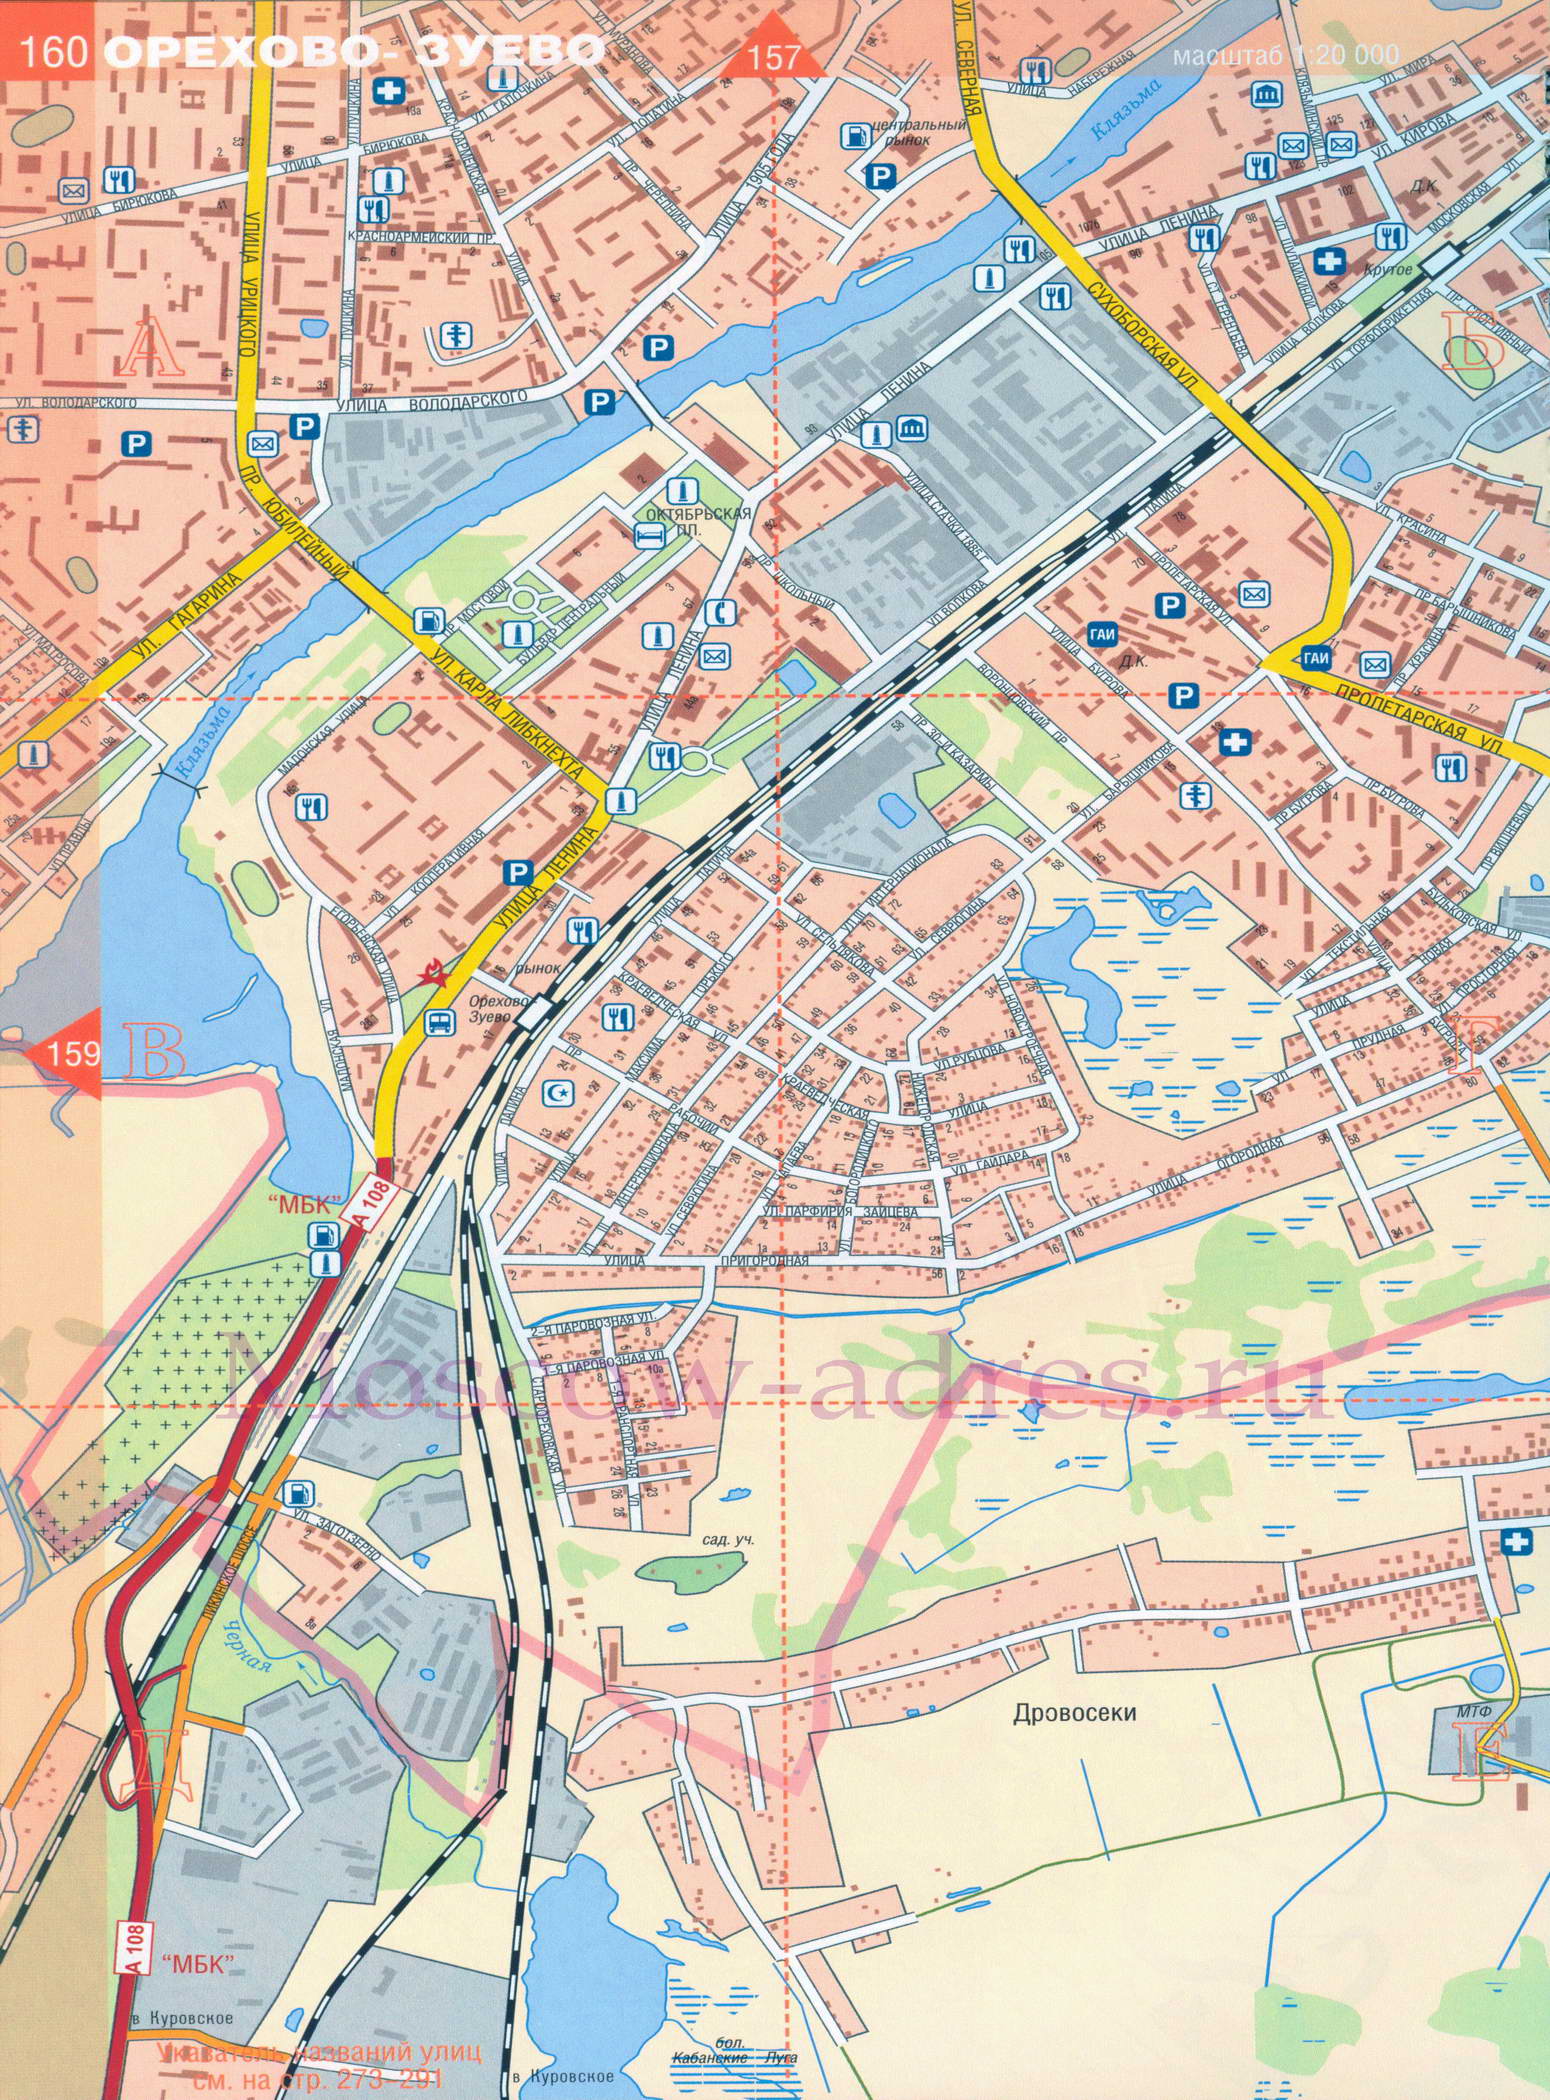 Карта Орехово-Зуево. Подробная карта Орехово-Зуево масштаба 1см:200м, B0